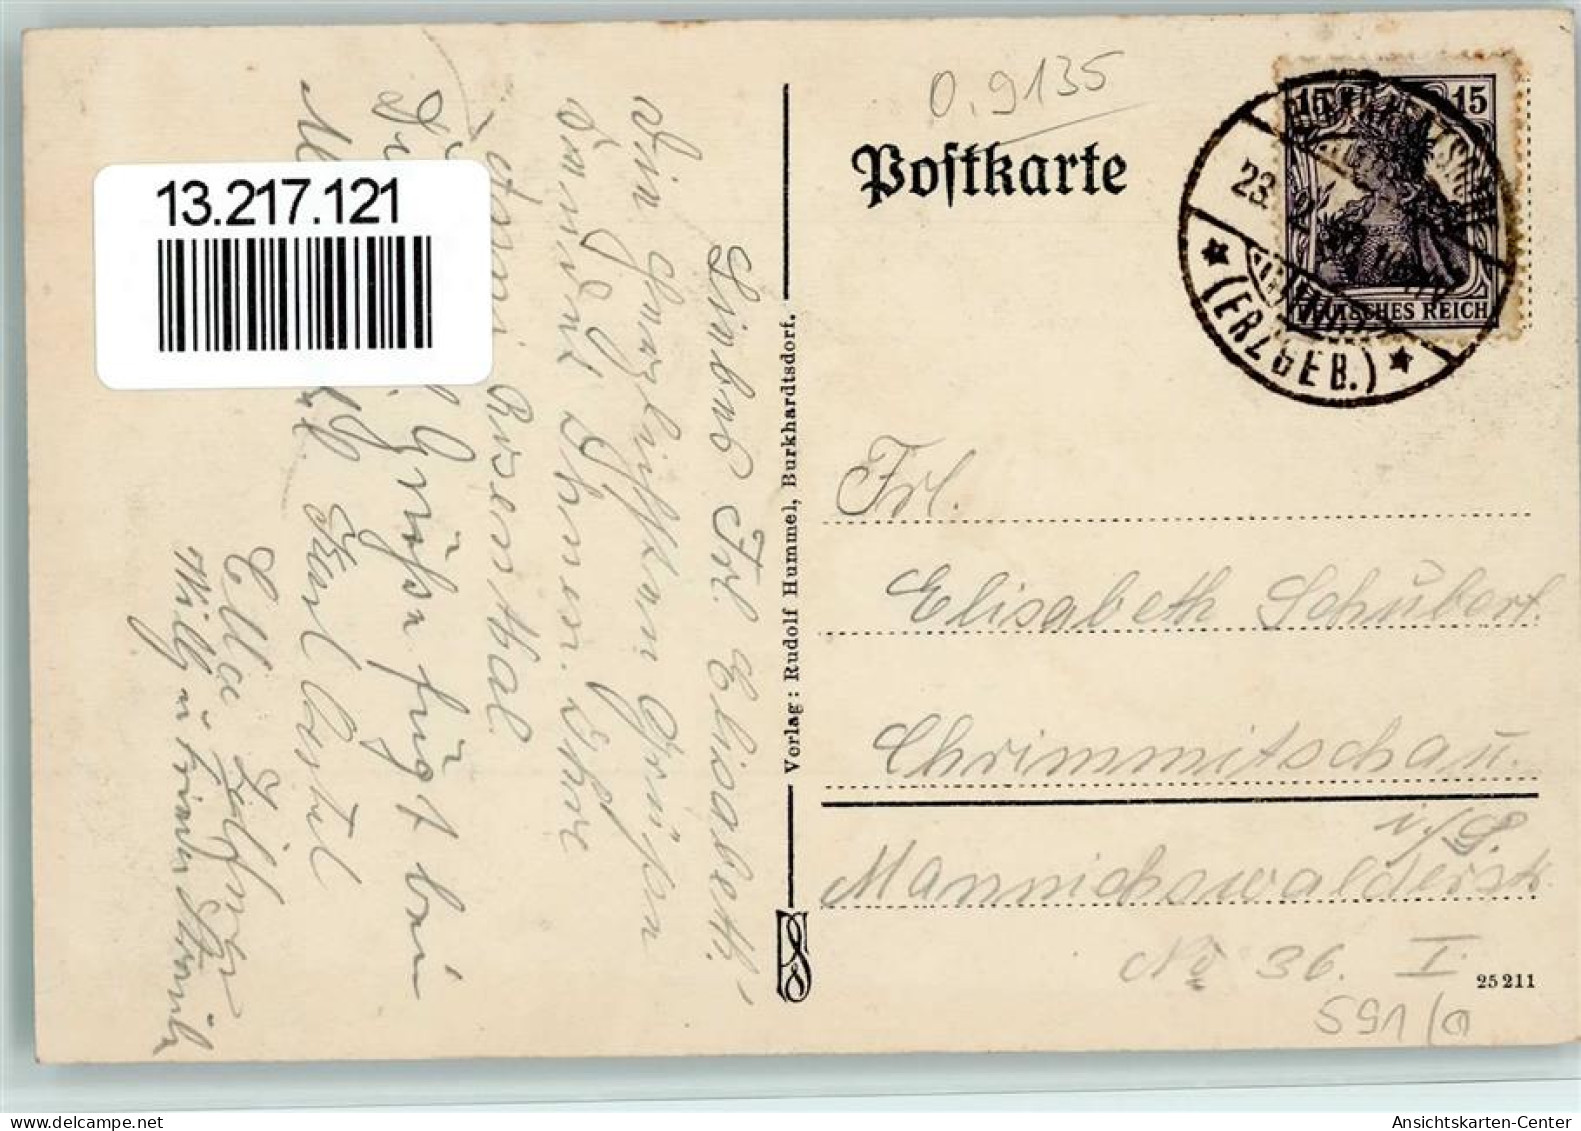 13217121 - Burkhardtsdorf - Burkhardtsdorf